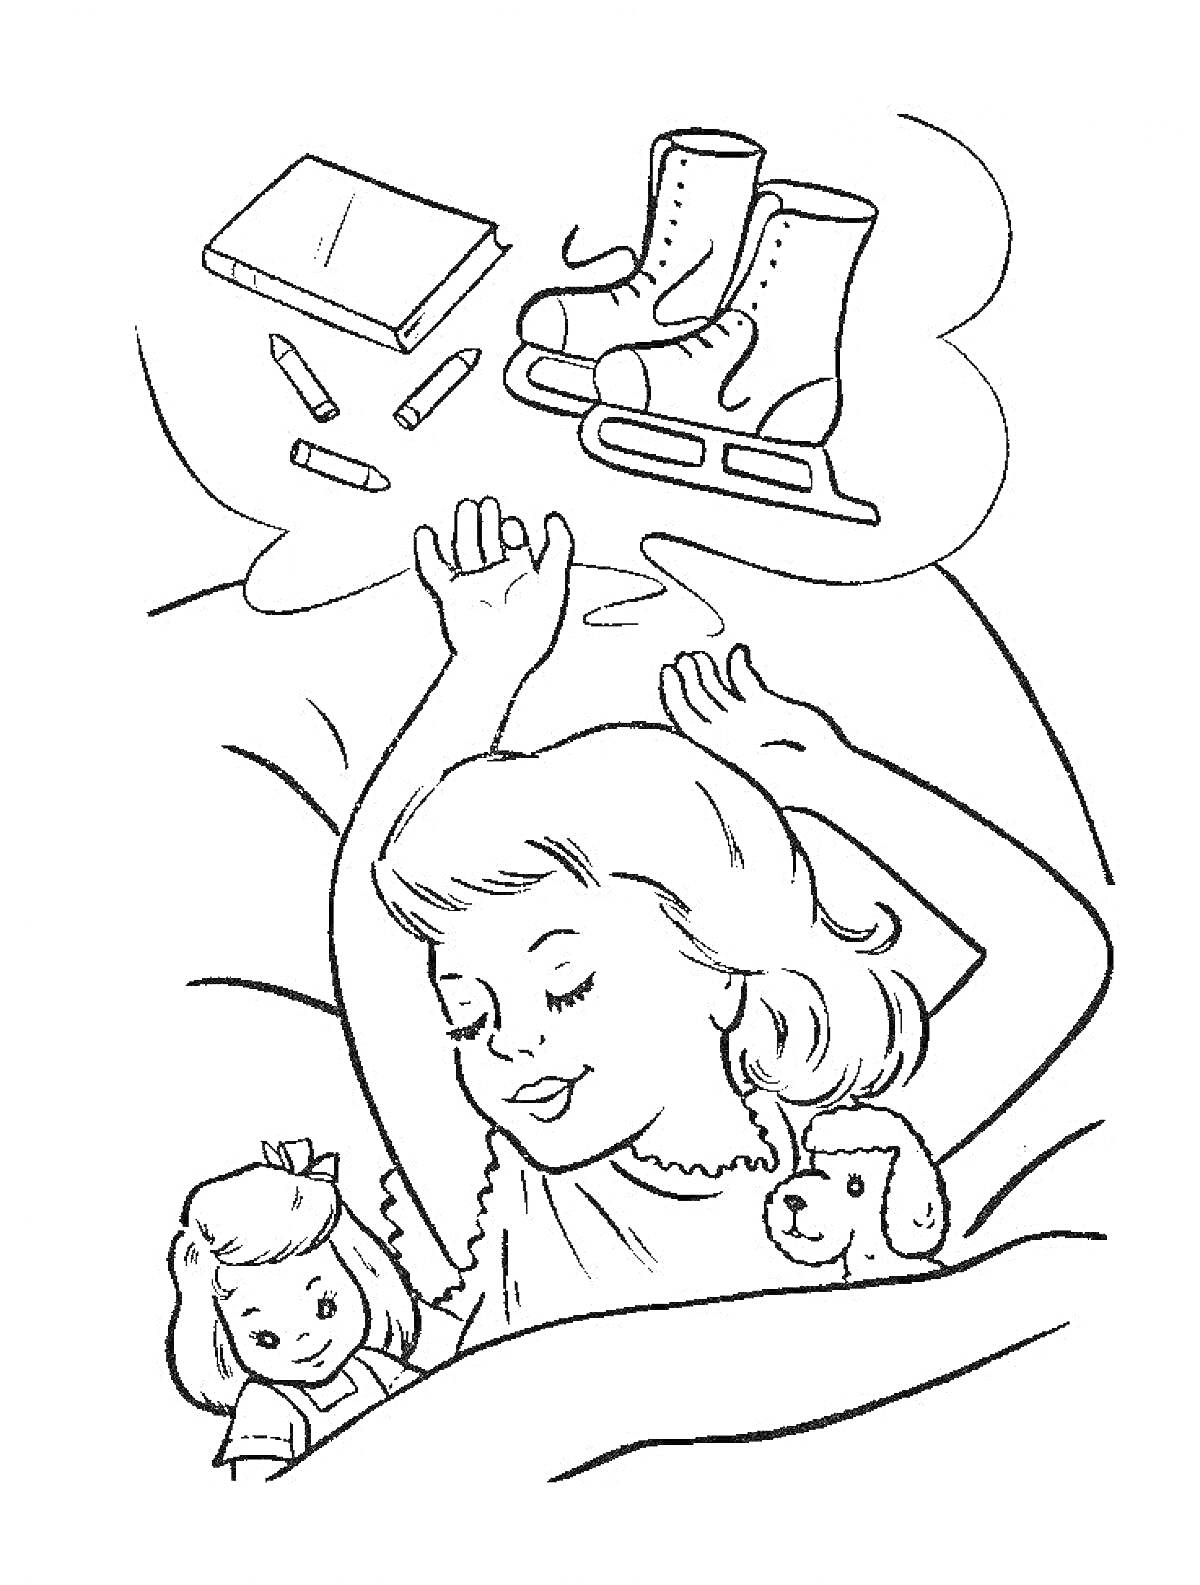 Раскраска Девочка спит и видит сон с фигурными коньками, книжкой, мелками, куклой и щенком